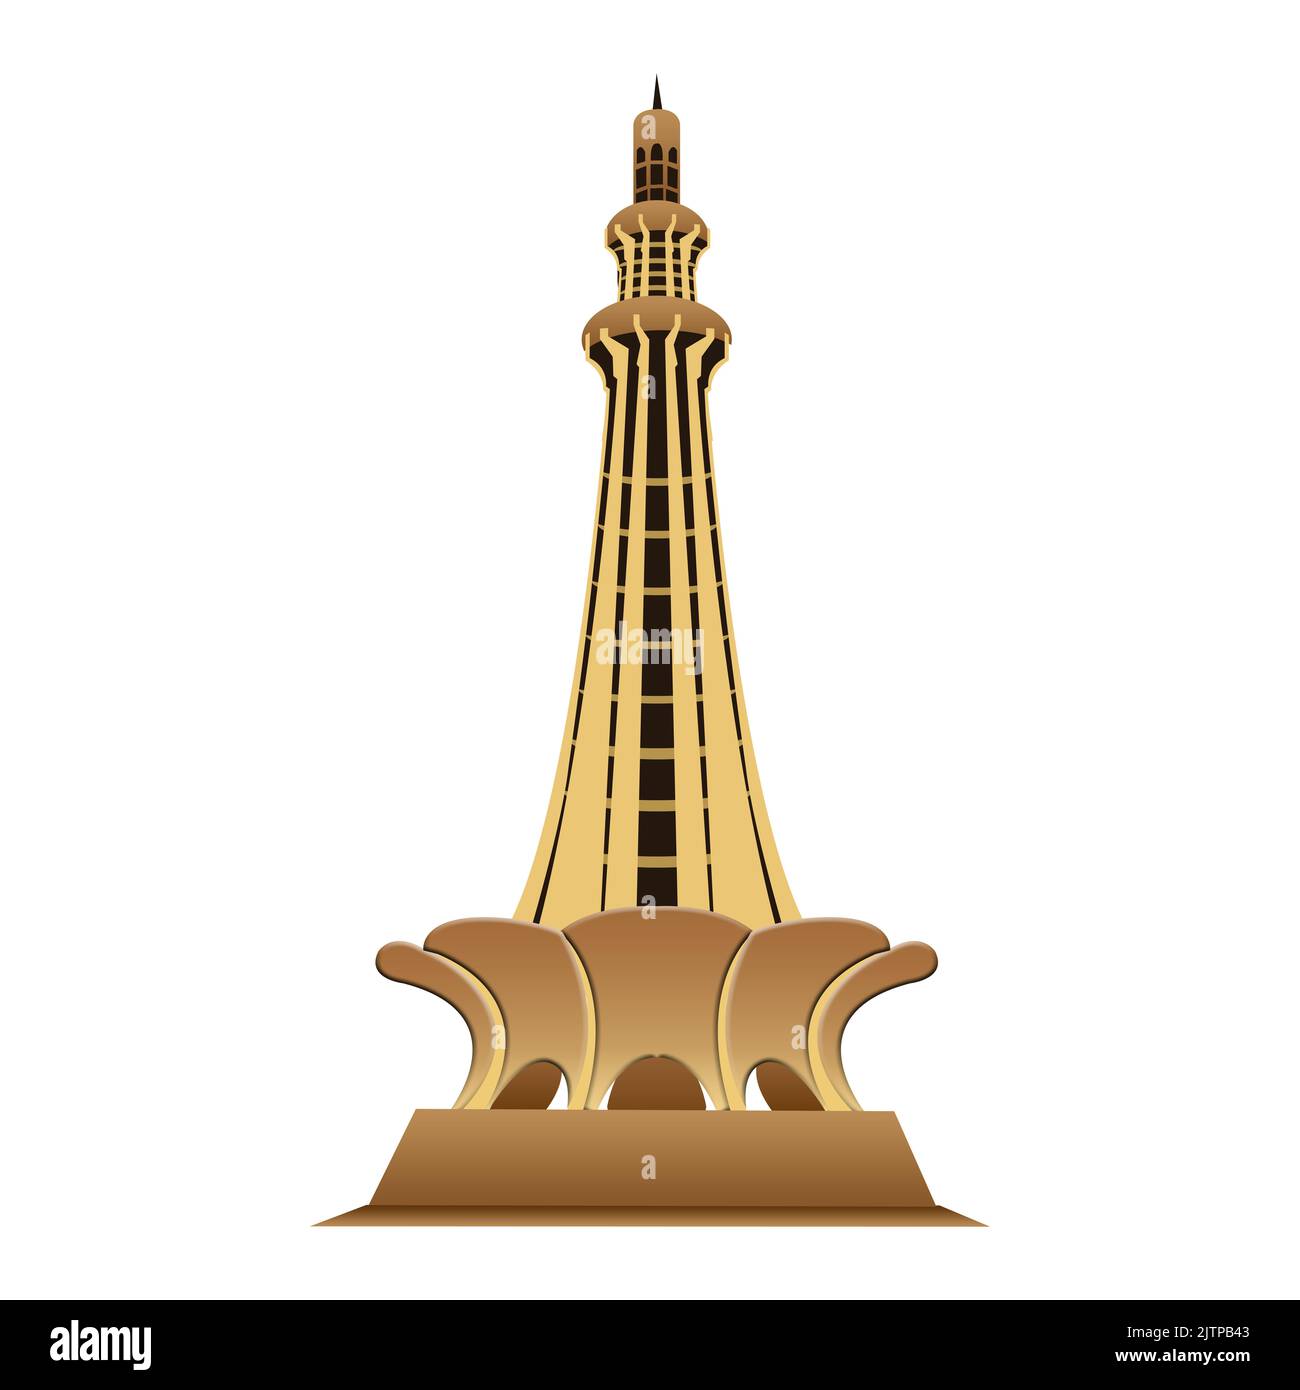 Minar e Pakistan dans la ville de Lahore Illustration Minar e pakistan Banque D'Images